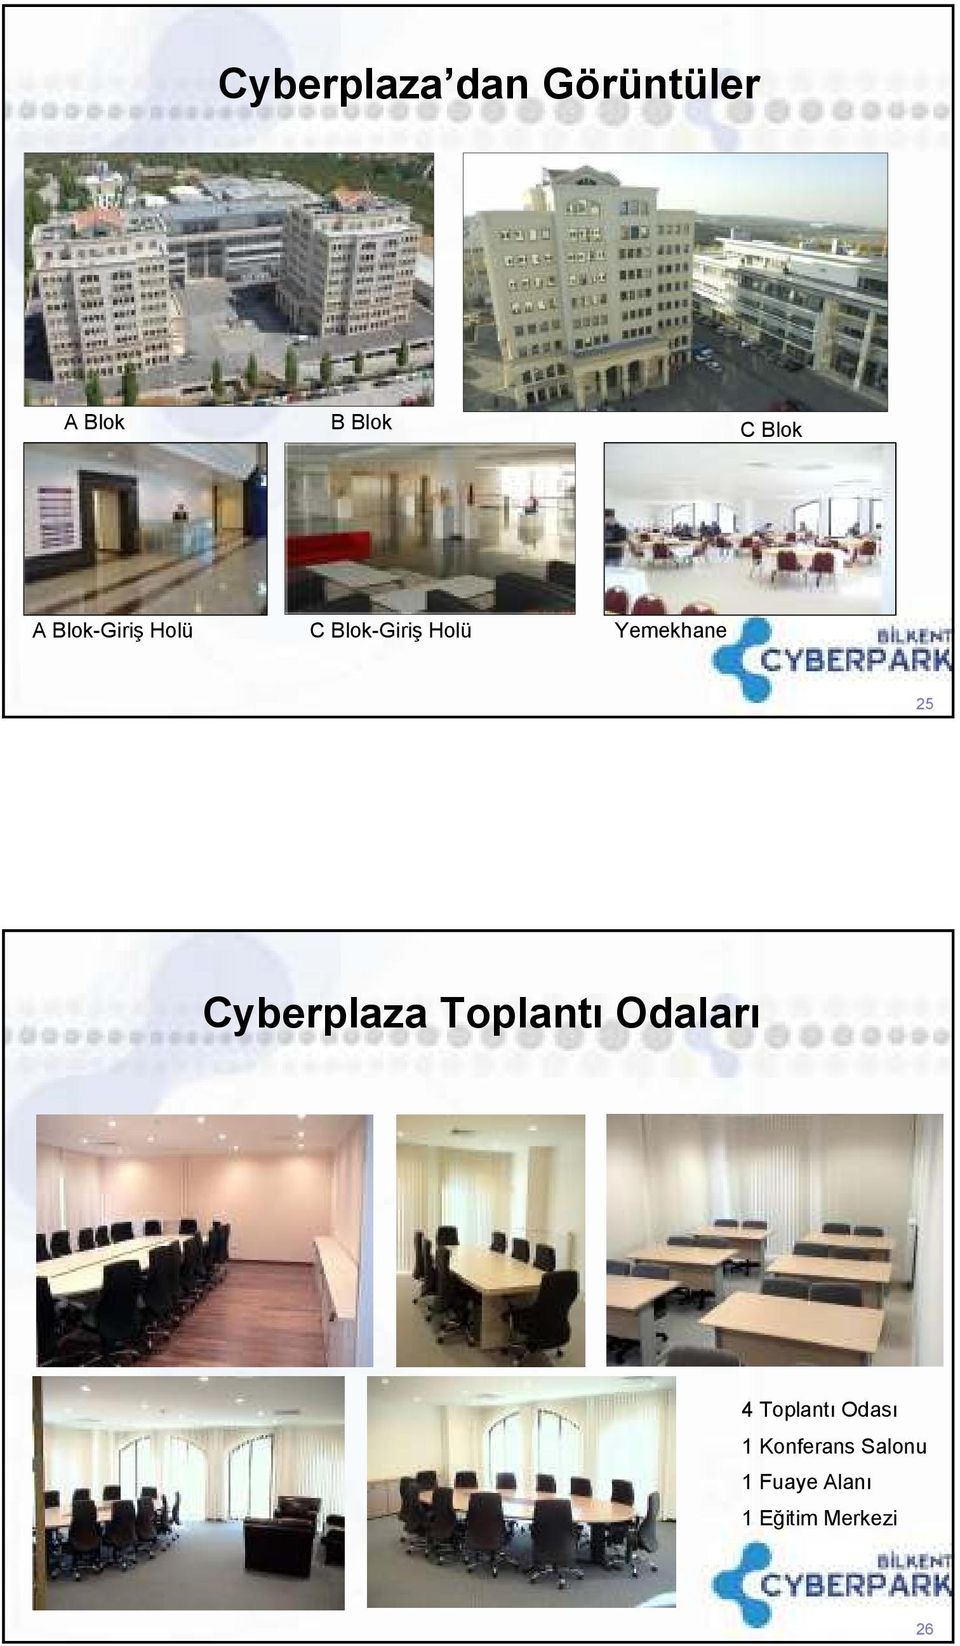 Cyberplaza Toplantı Odaları 4 Toplantı Odası 1